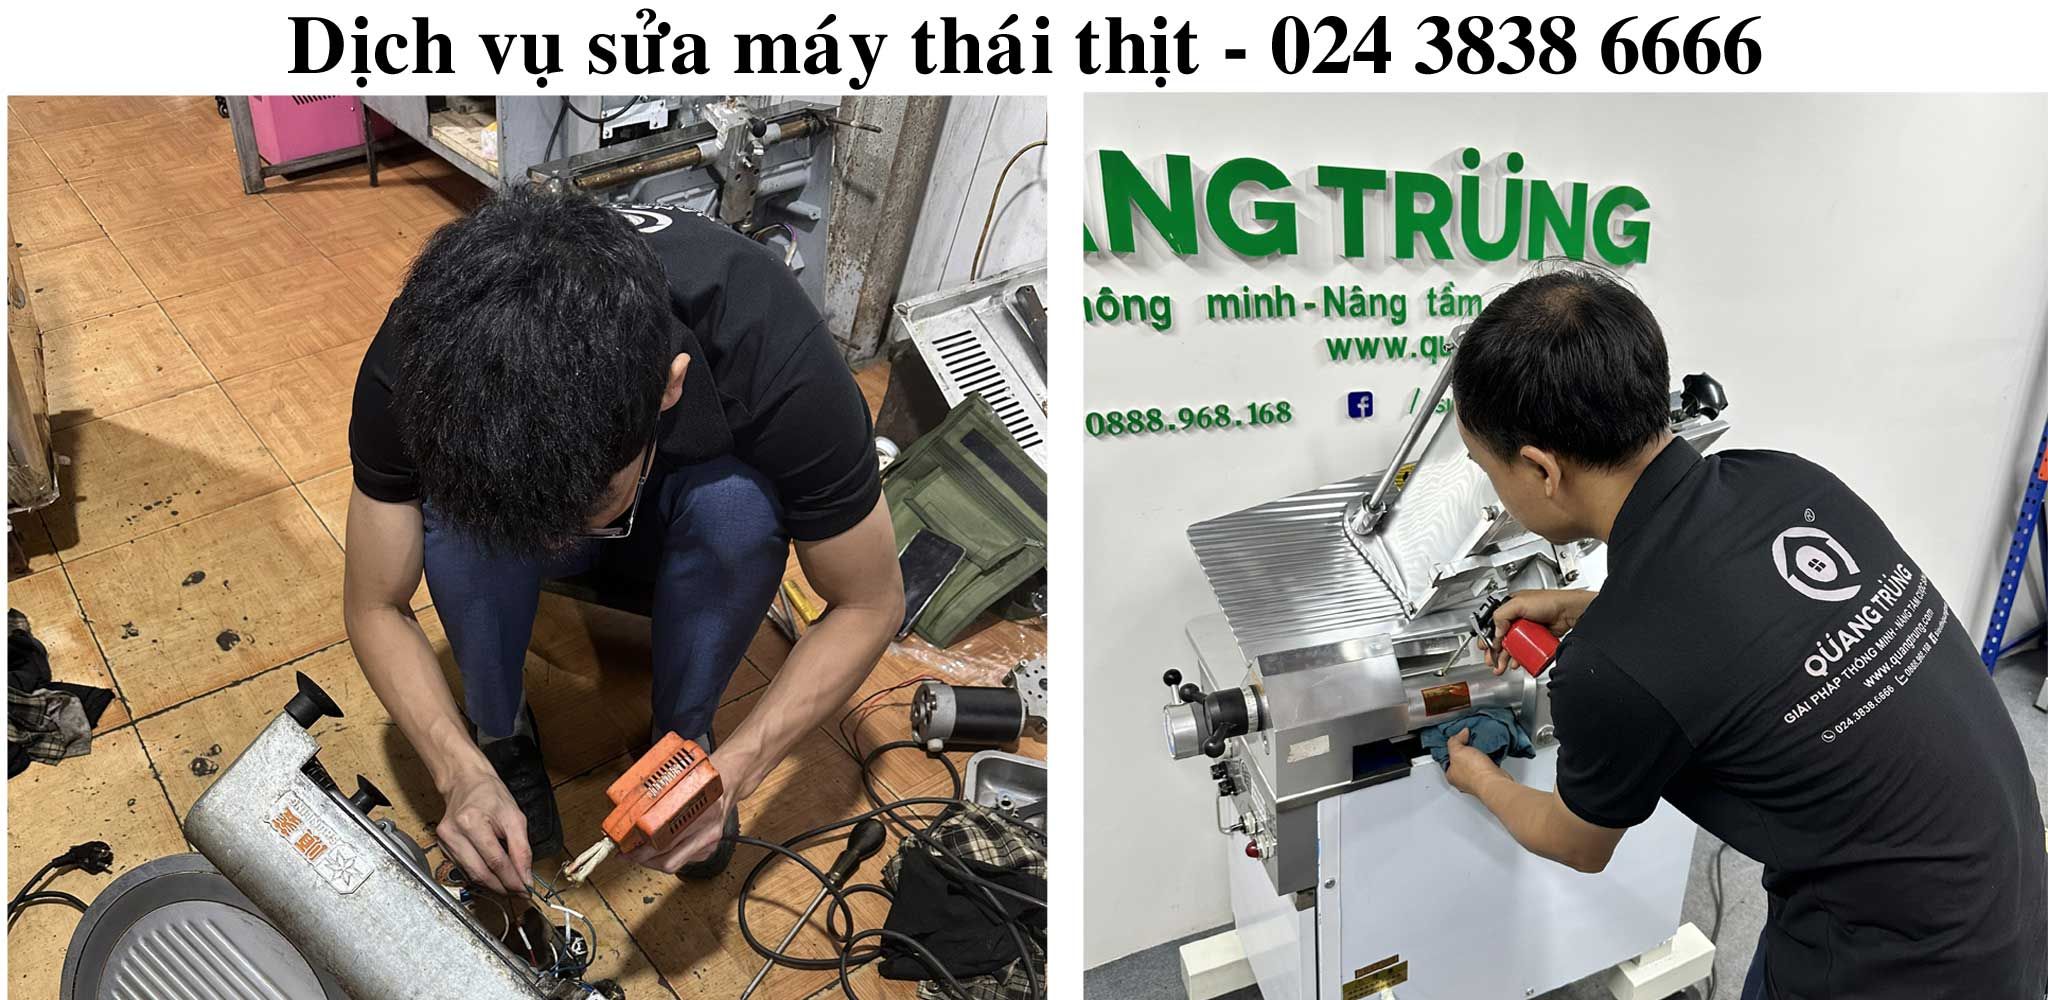 Dich vu sua may thai thit Ha Noi 024 3838 6666